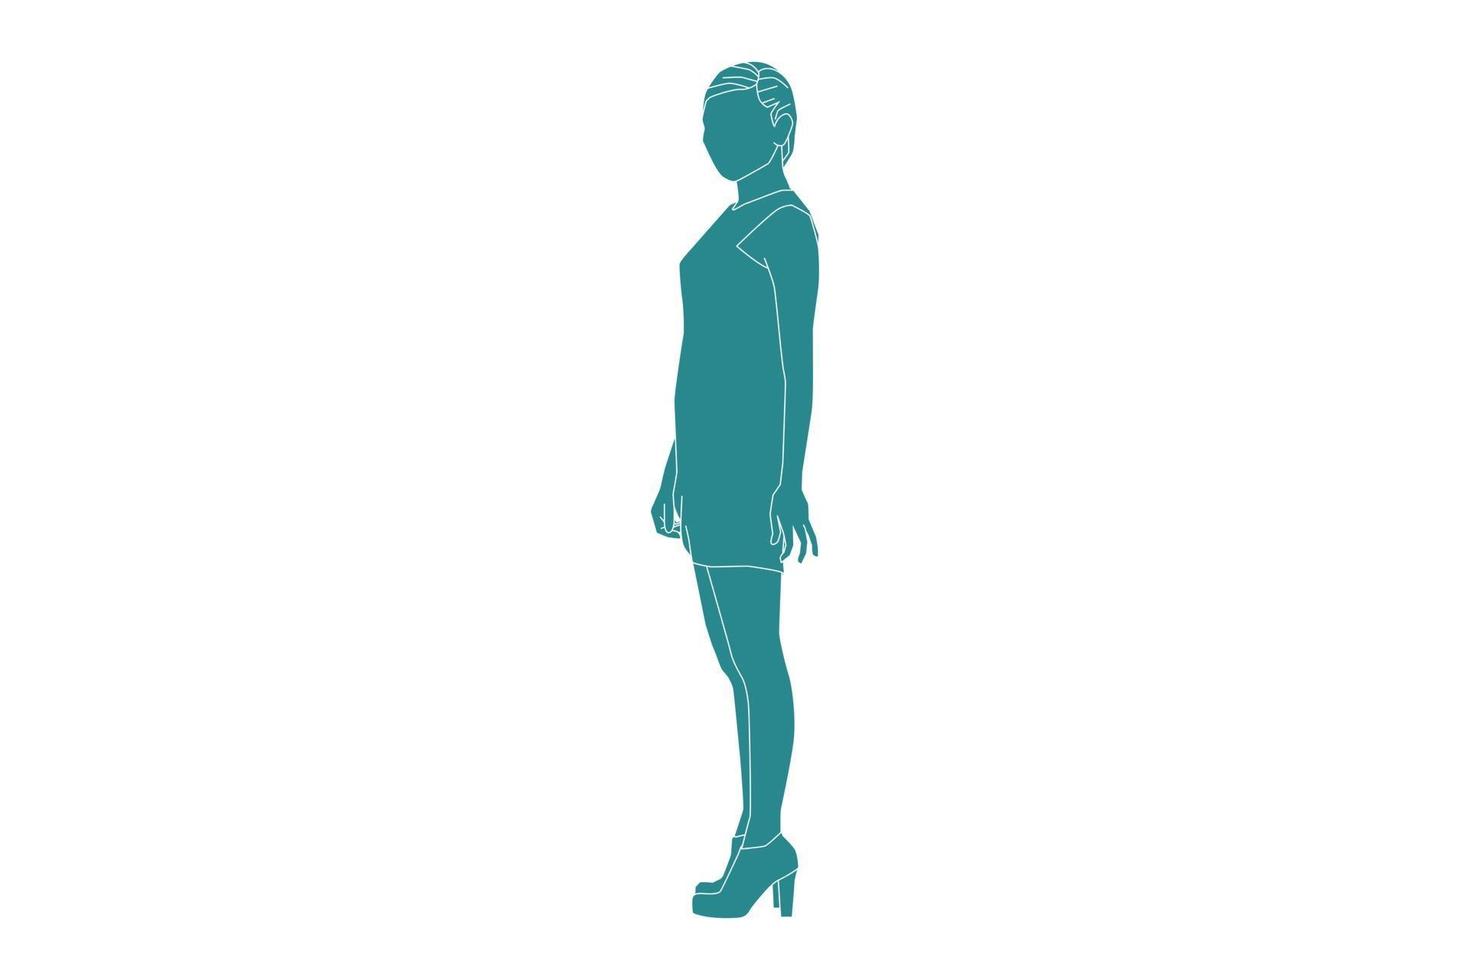 ilustração em vetor de mulher elegante no caminho lateral com minivestido, estilo simples com contorno